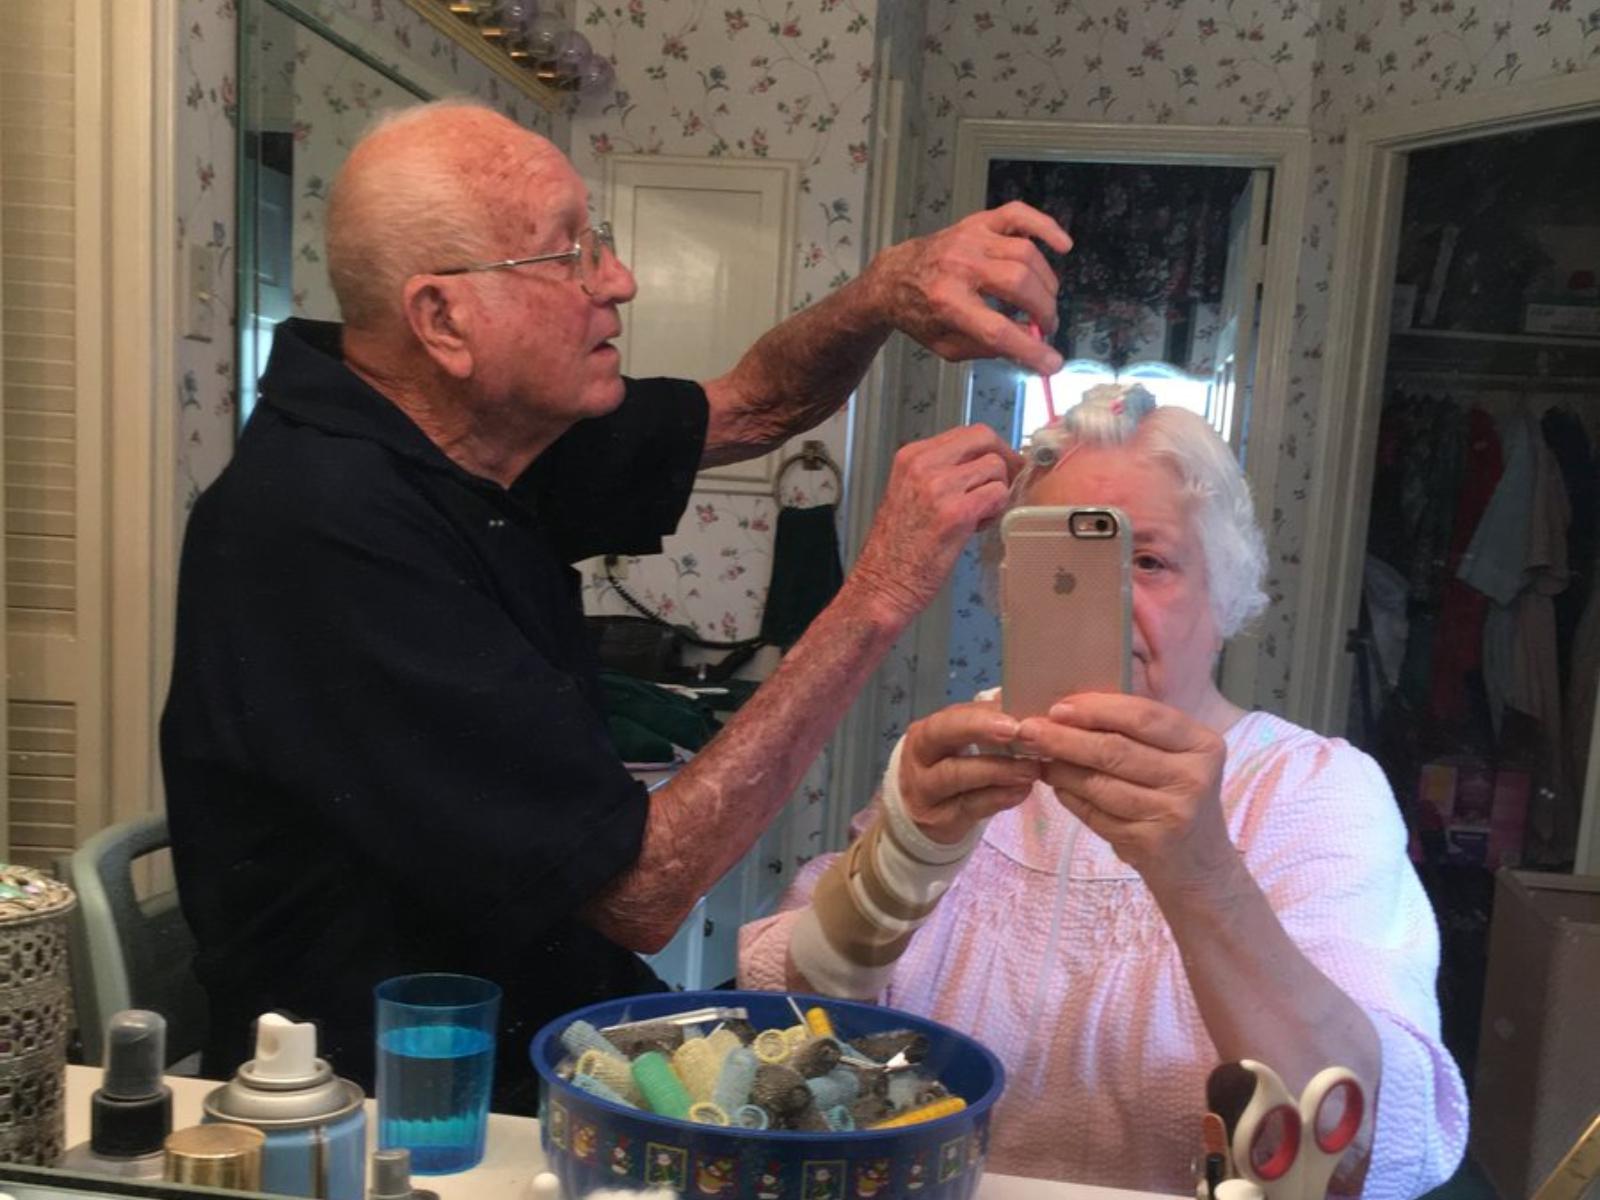 Η φωτογραφία του παππού που χτενίζει τα μαλλιά της γυναίκας του  έγινε viral!